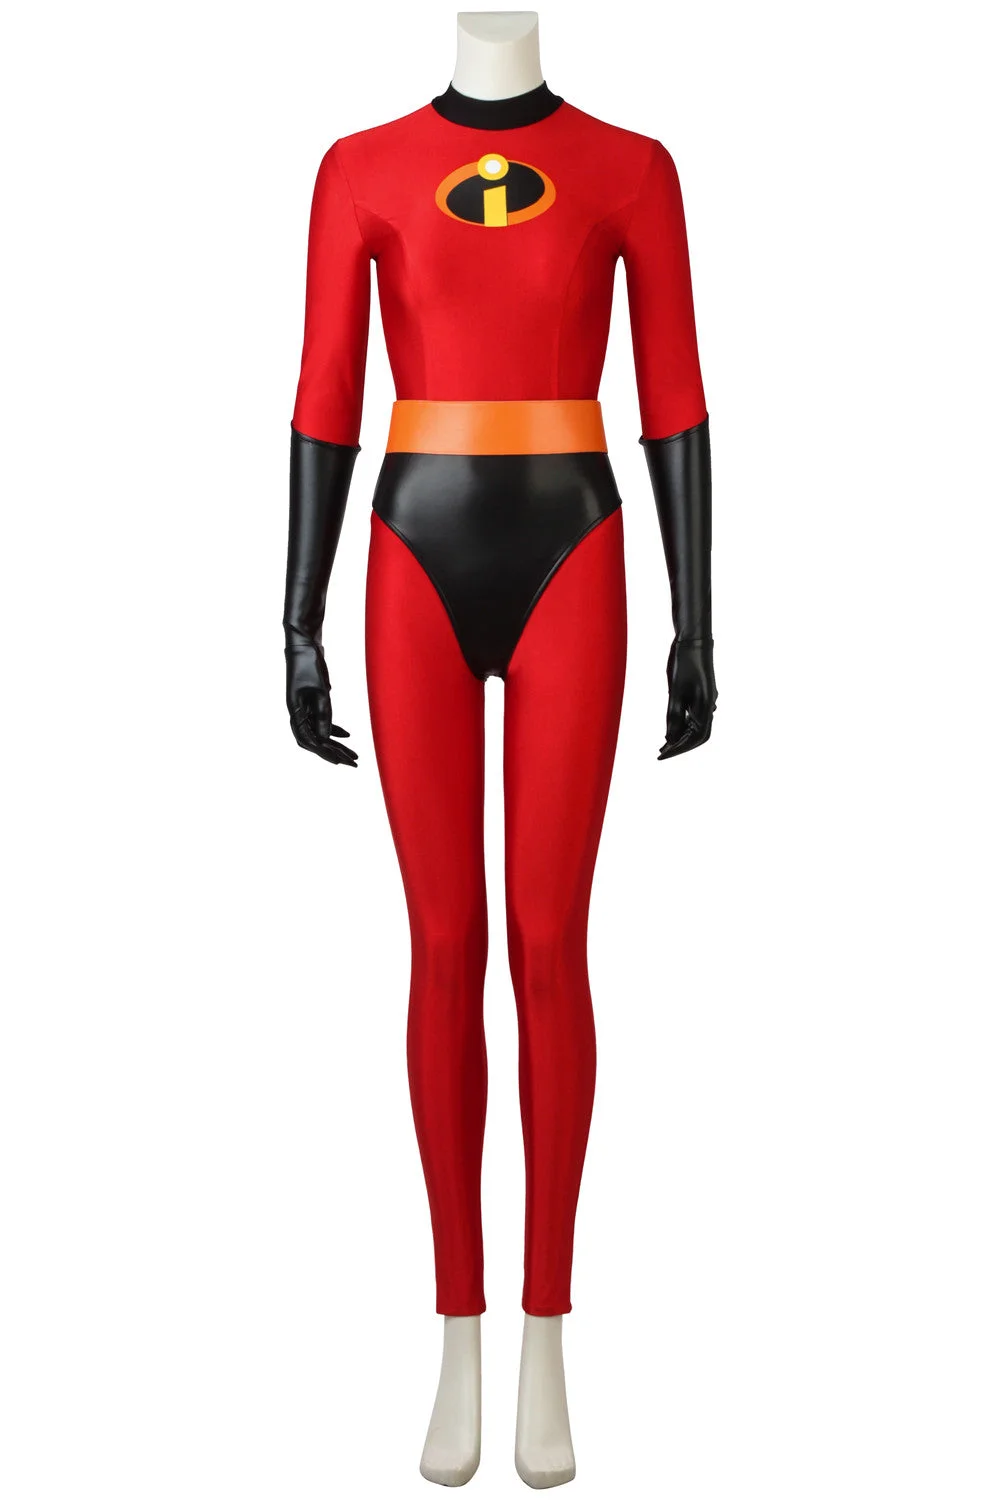 The Incredibles 2 Elastigirl Helen Parr Cosplay Costume